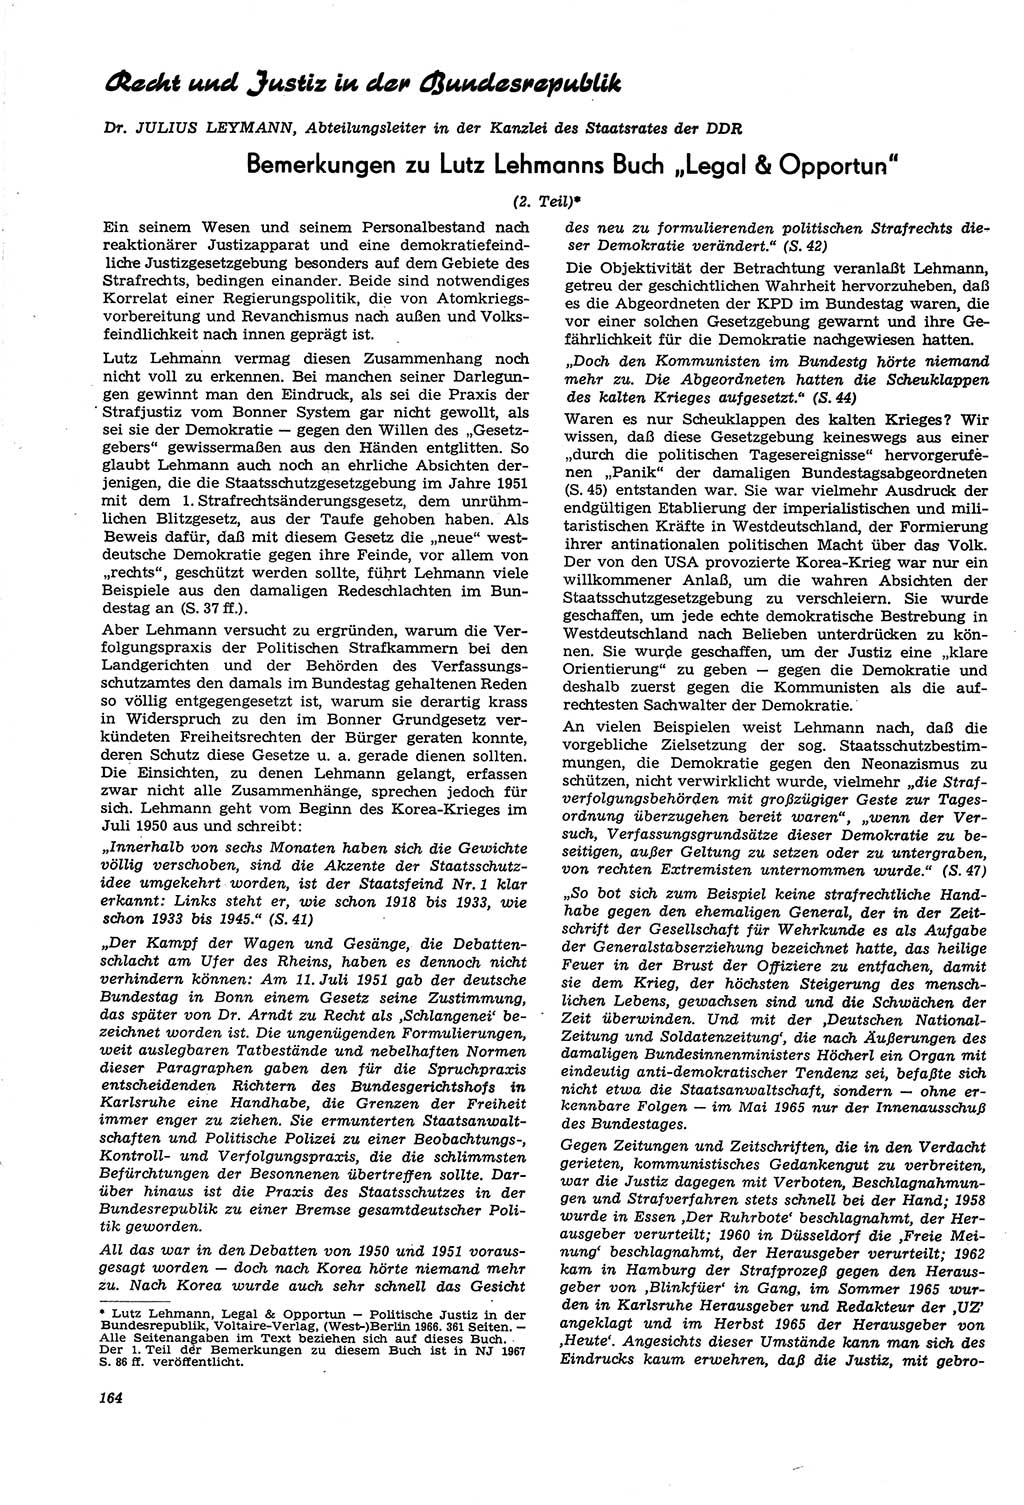 Neue Justiz (NJ), Zeitschrift für Recht und Rechtswissenschaft [Deutsche Demokratische Republik (DDR)], 21. Jahrgang 1967, Seite 164 (NJ DDR 1967, S. 164)